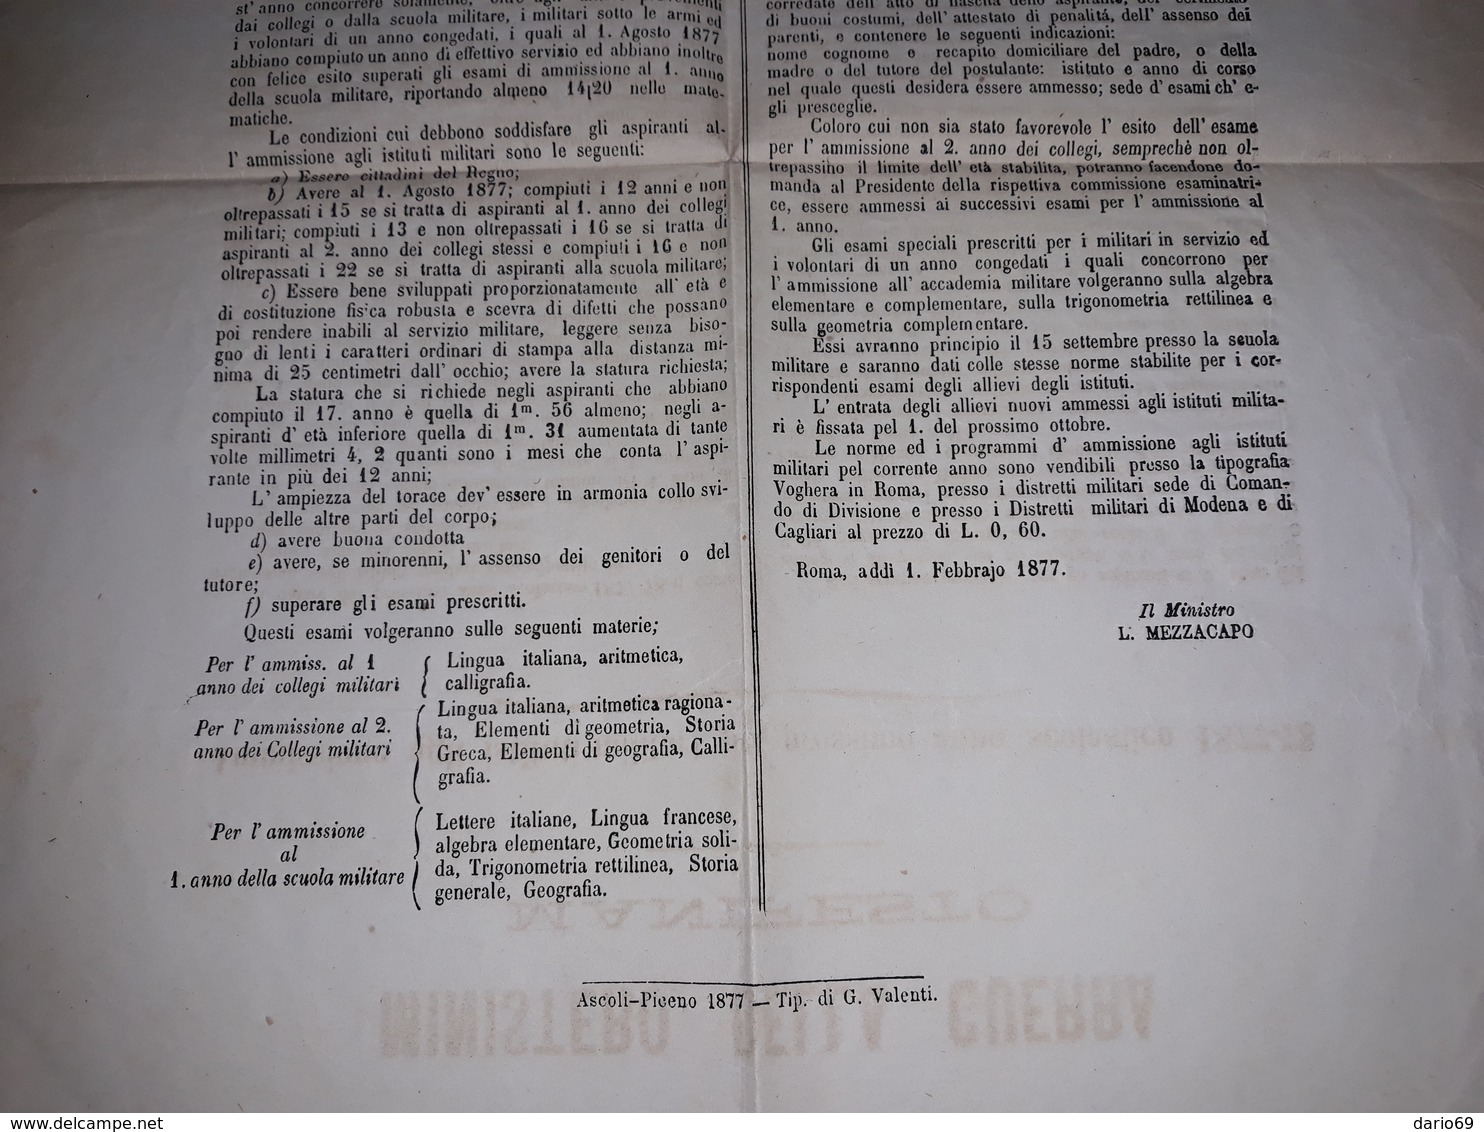 1877  MANIFESTO  ROMA  MINISTERO DELLA GUERRA AMMISSIONI AGLI ISTITUTI MILITARI - Historical Documents